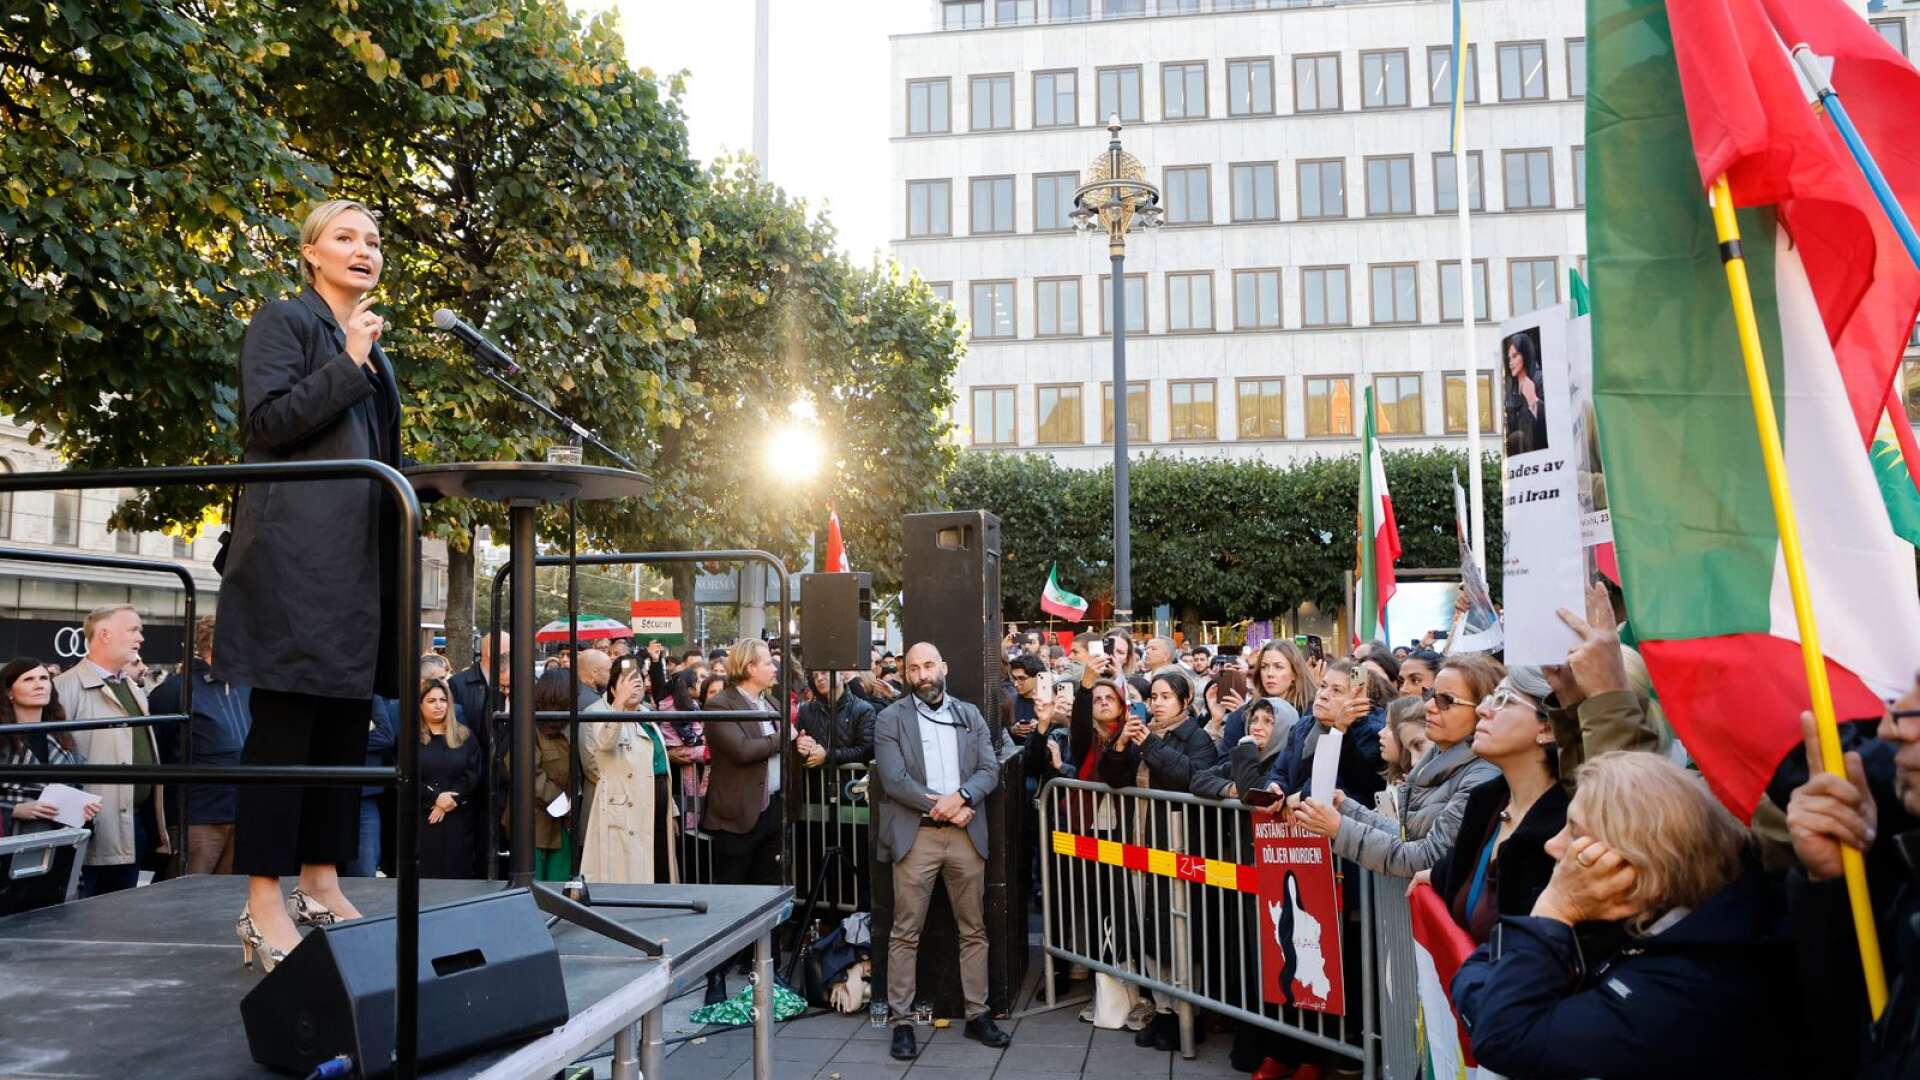 KD-ledaren Ebba Busch talade vid en manifestation för det iranska folket på Norrmalmstorg i Stockholm under onsdagen.